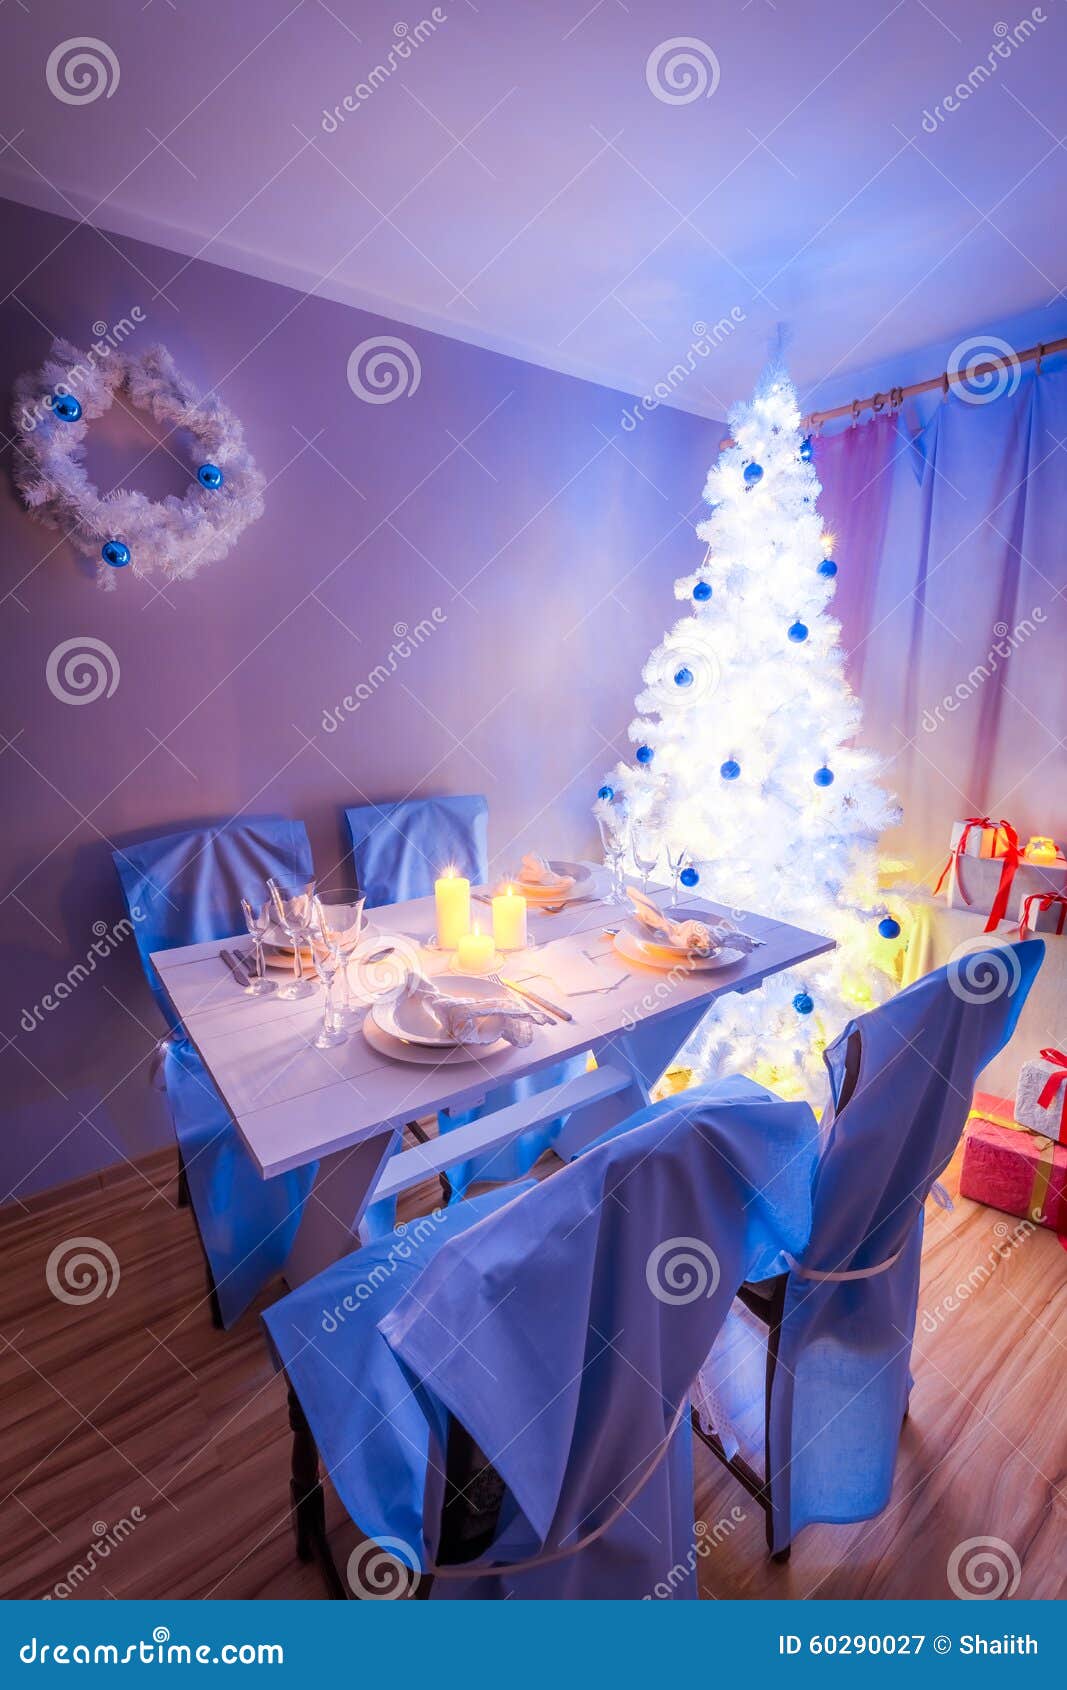 Beautiful Christmas Table Setting with Christmas Tree Stock Image ...